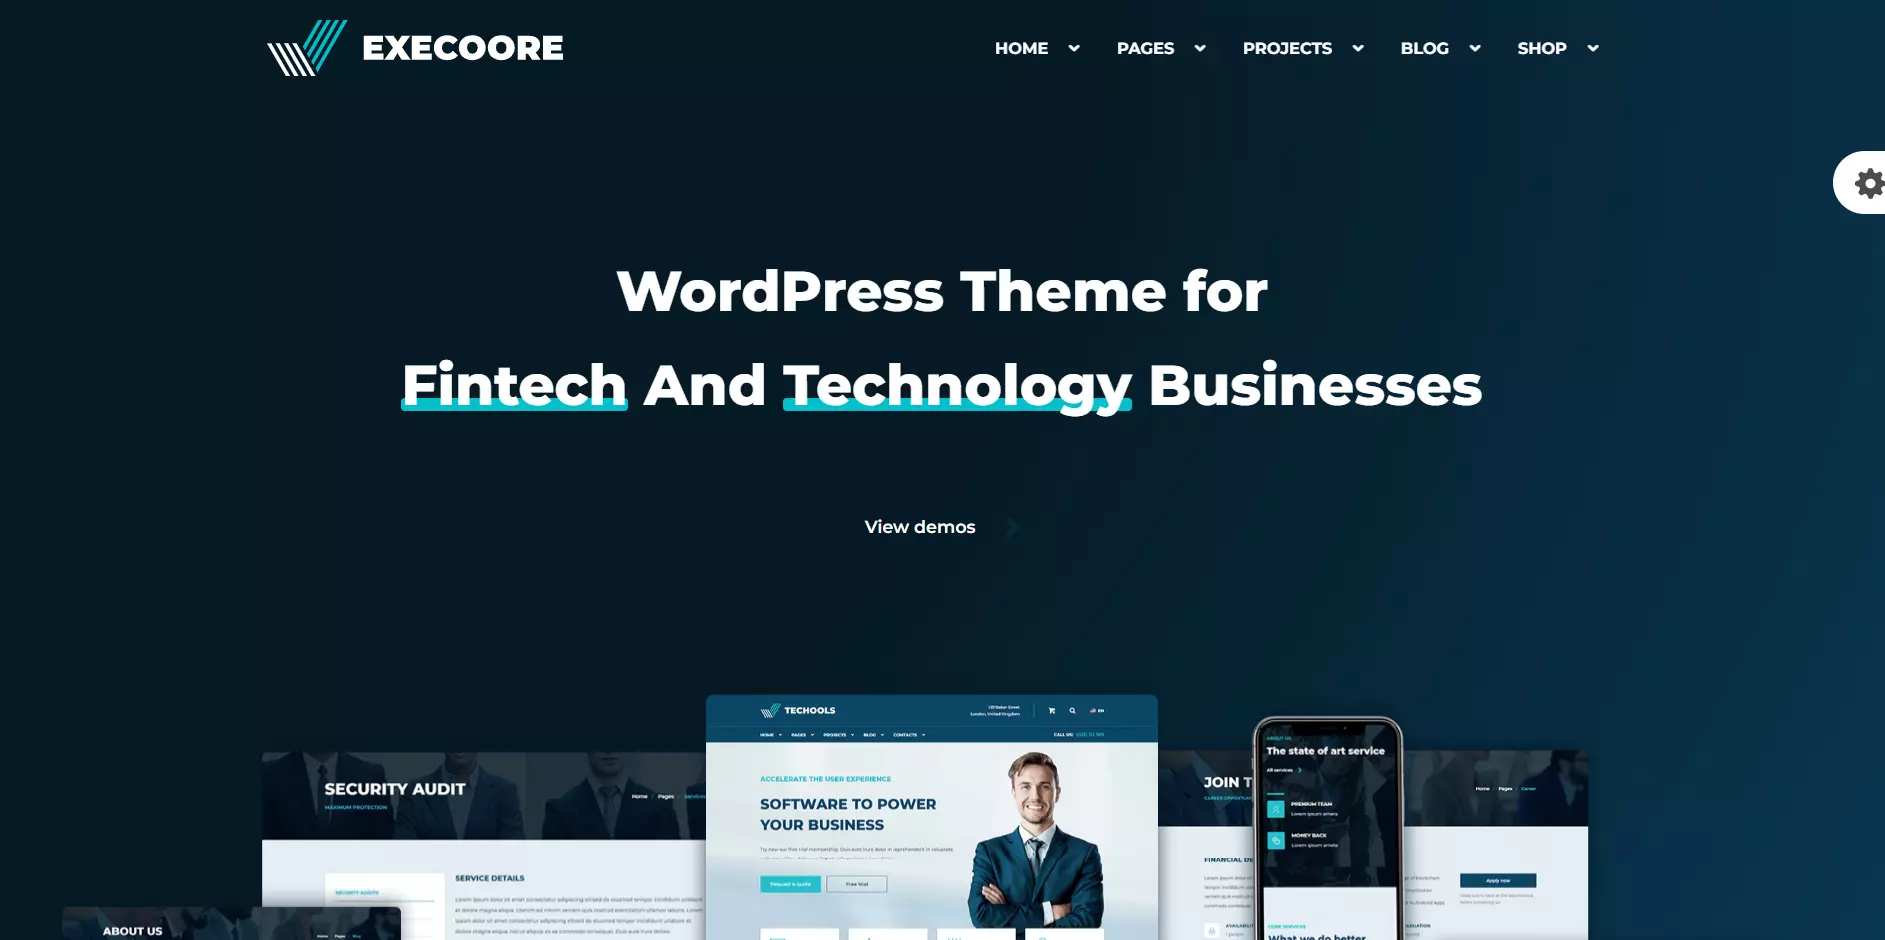 Execoore WordPress Theme